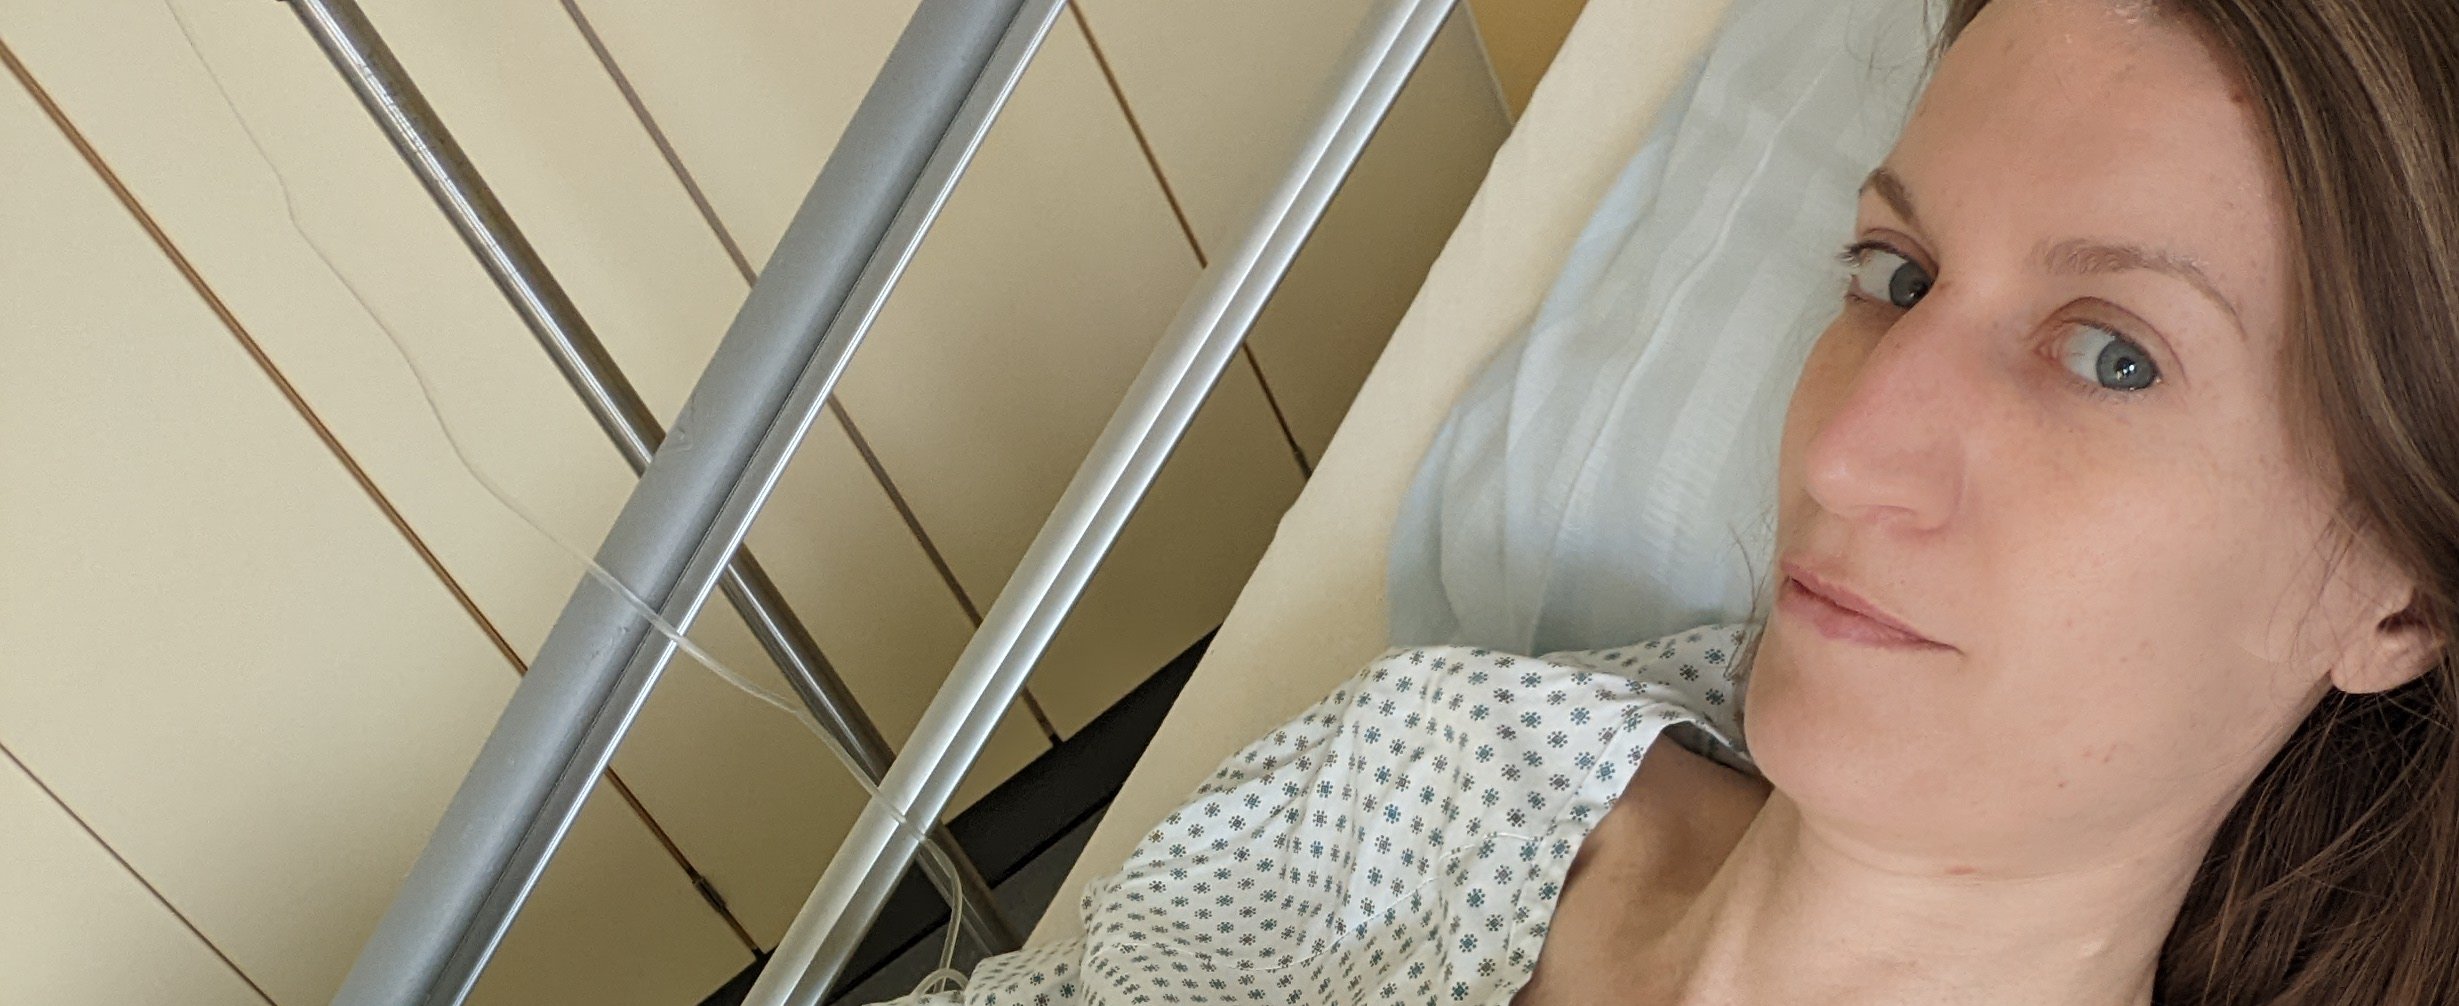 Verena Nabert nach ihrer Endometriose-OP im Krankenhausbett